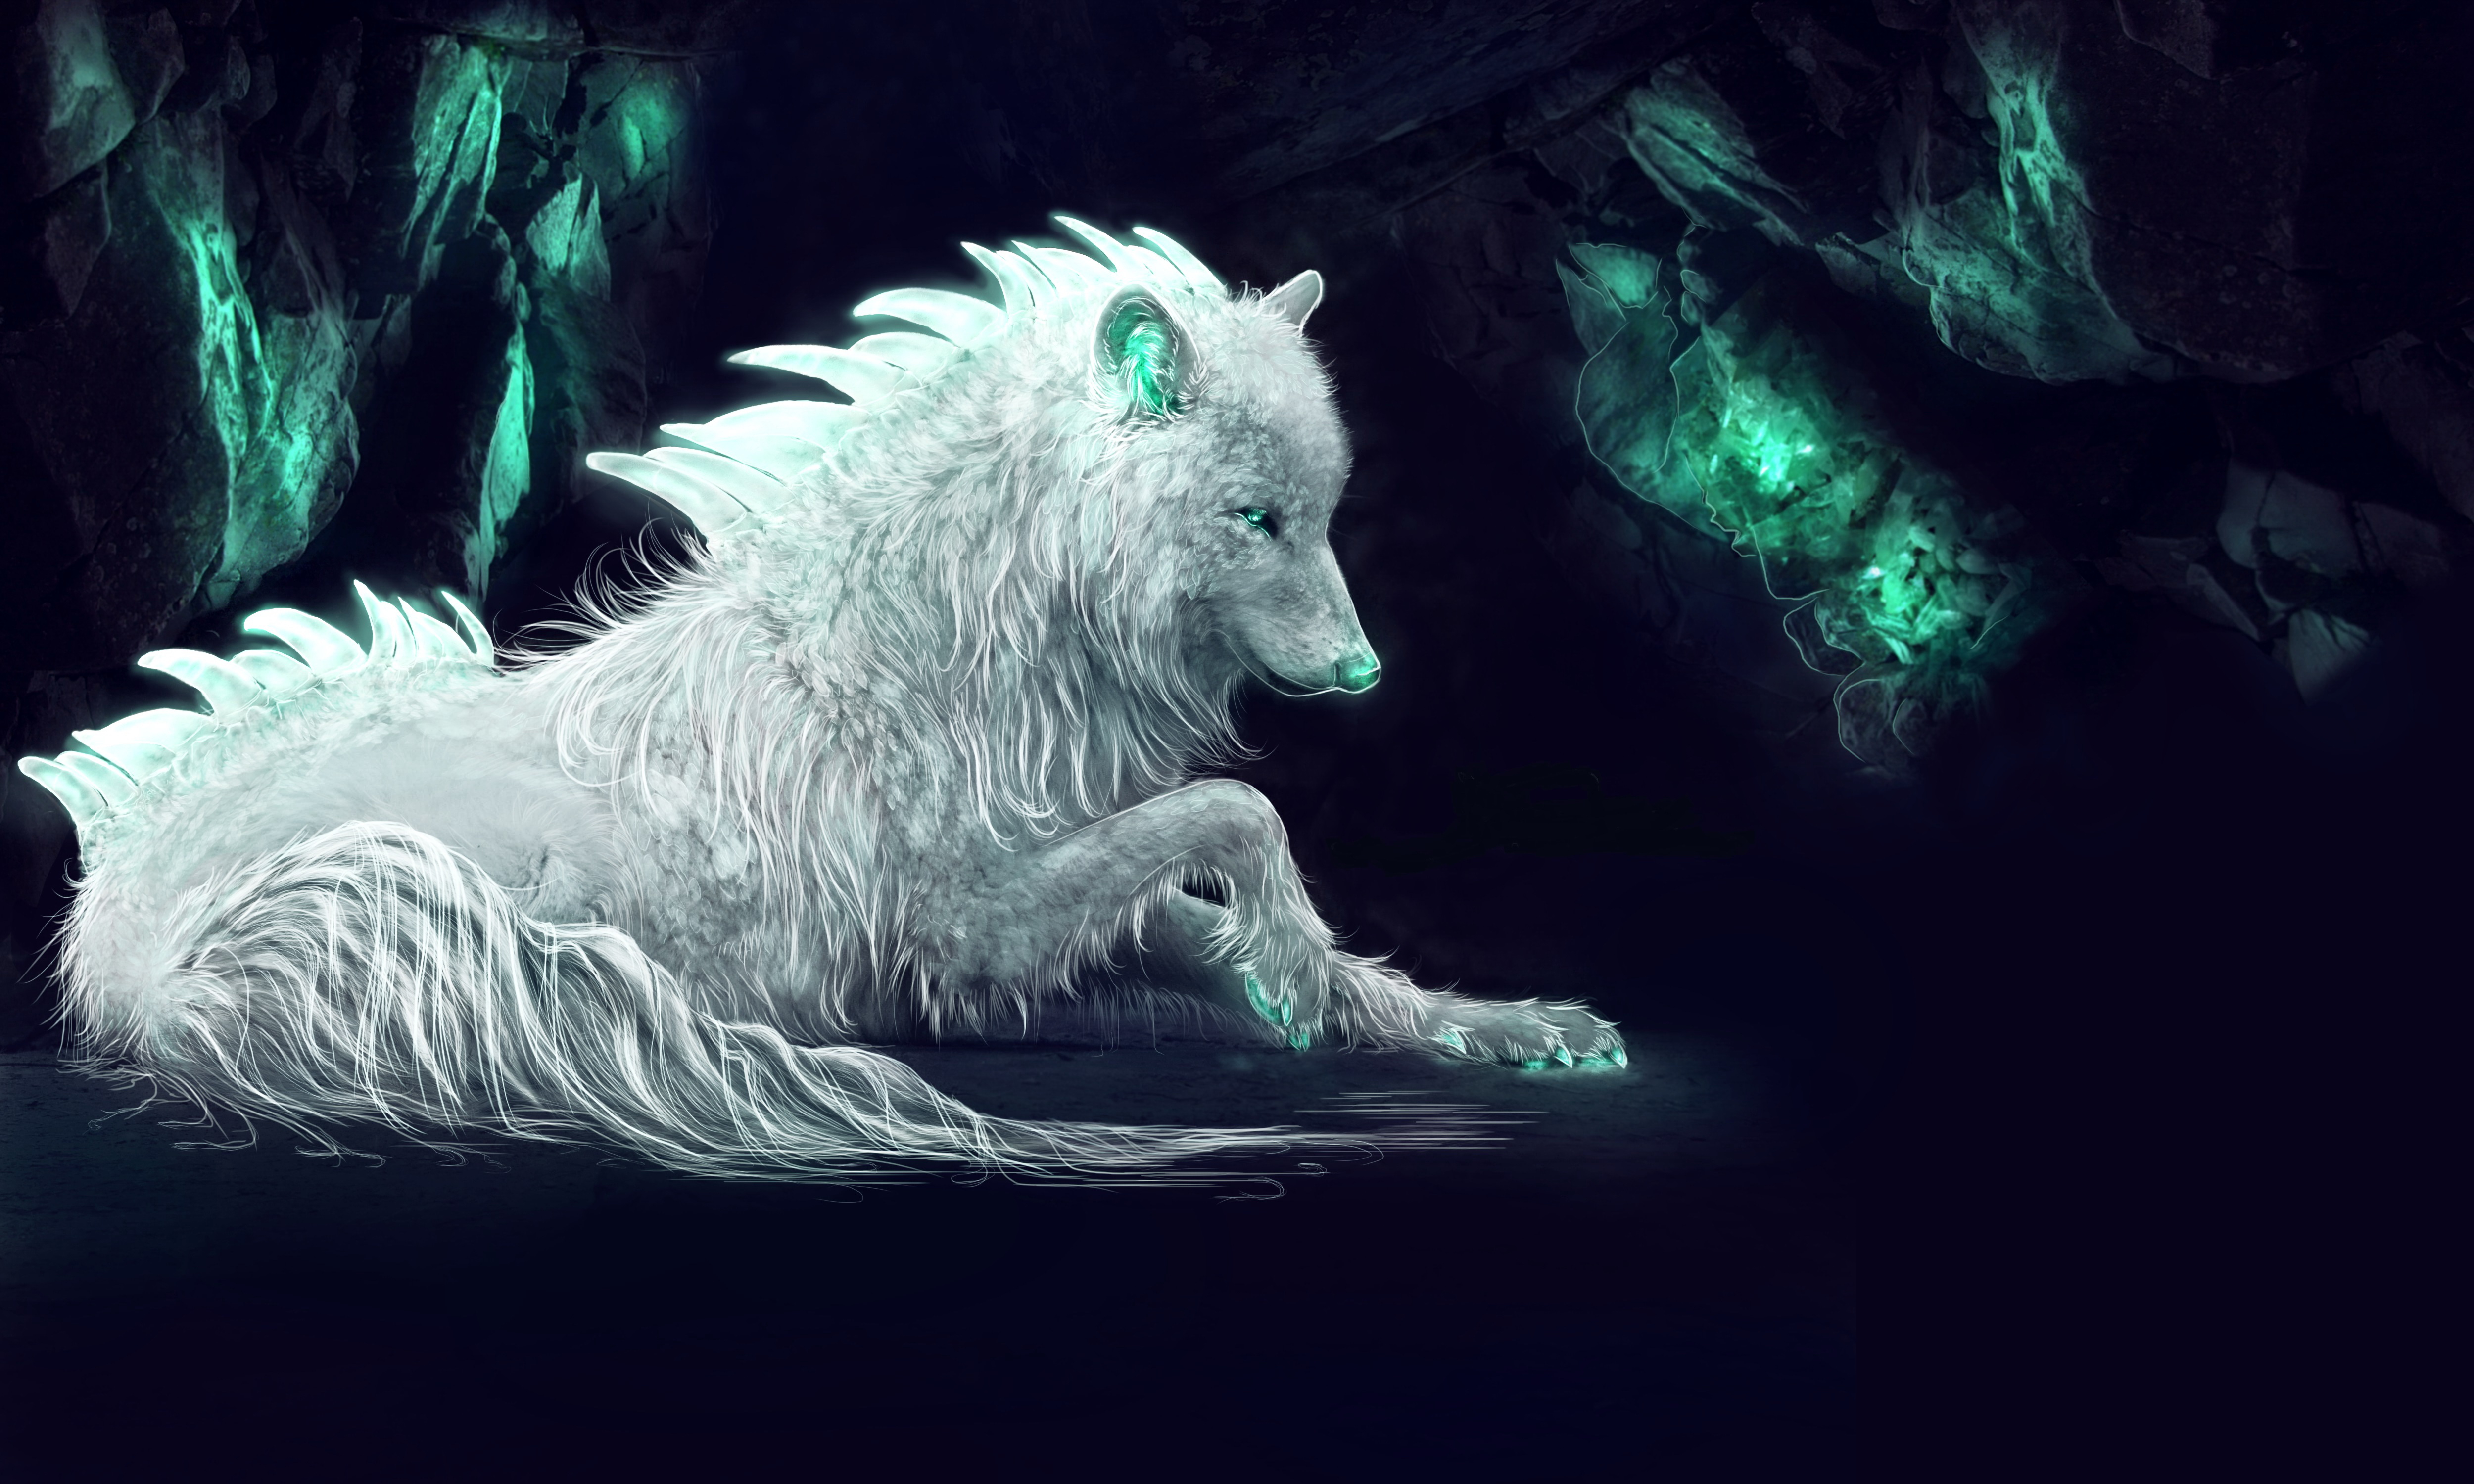 White Wolf: Thế giới của White Wolf chắc chắn sẽ làm bạn say mê với những sinh vật siêu nhiên đầy bí ẩn. Hình ảnh này sẽ mang đến cho bạn cái nhìn khác về loài sói trắng và mở ra cho bạn một thế giới đầy phép thuật và phiêu lưu.